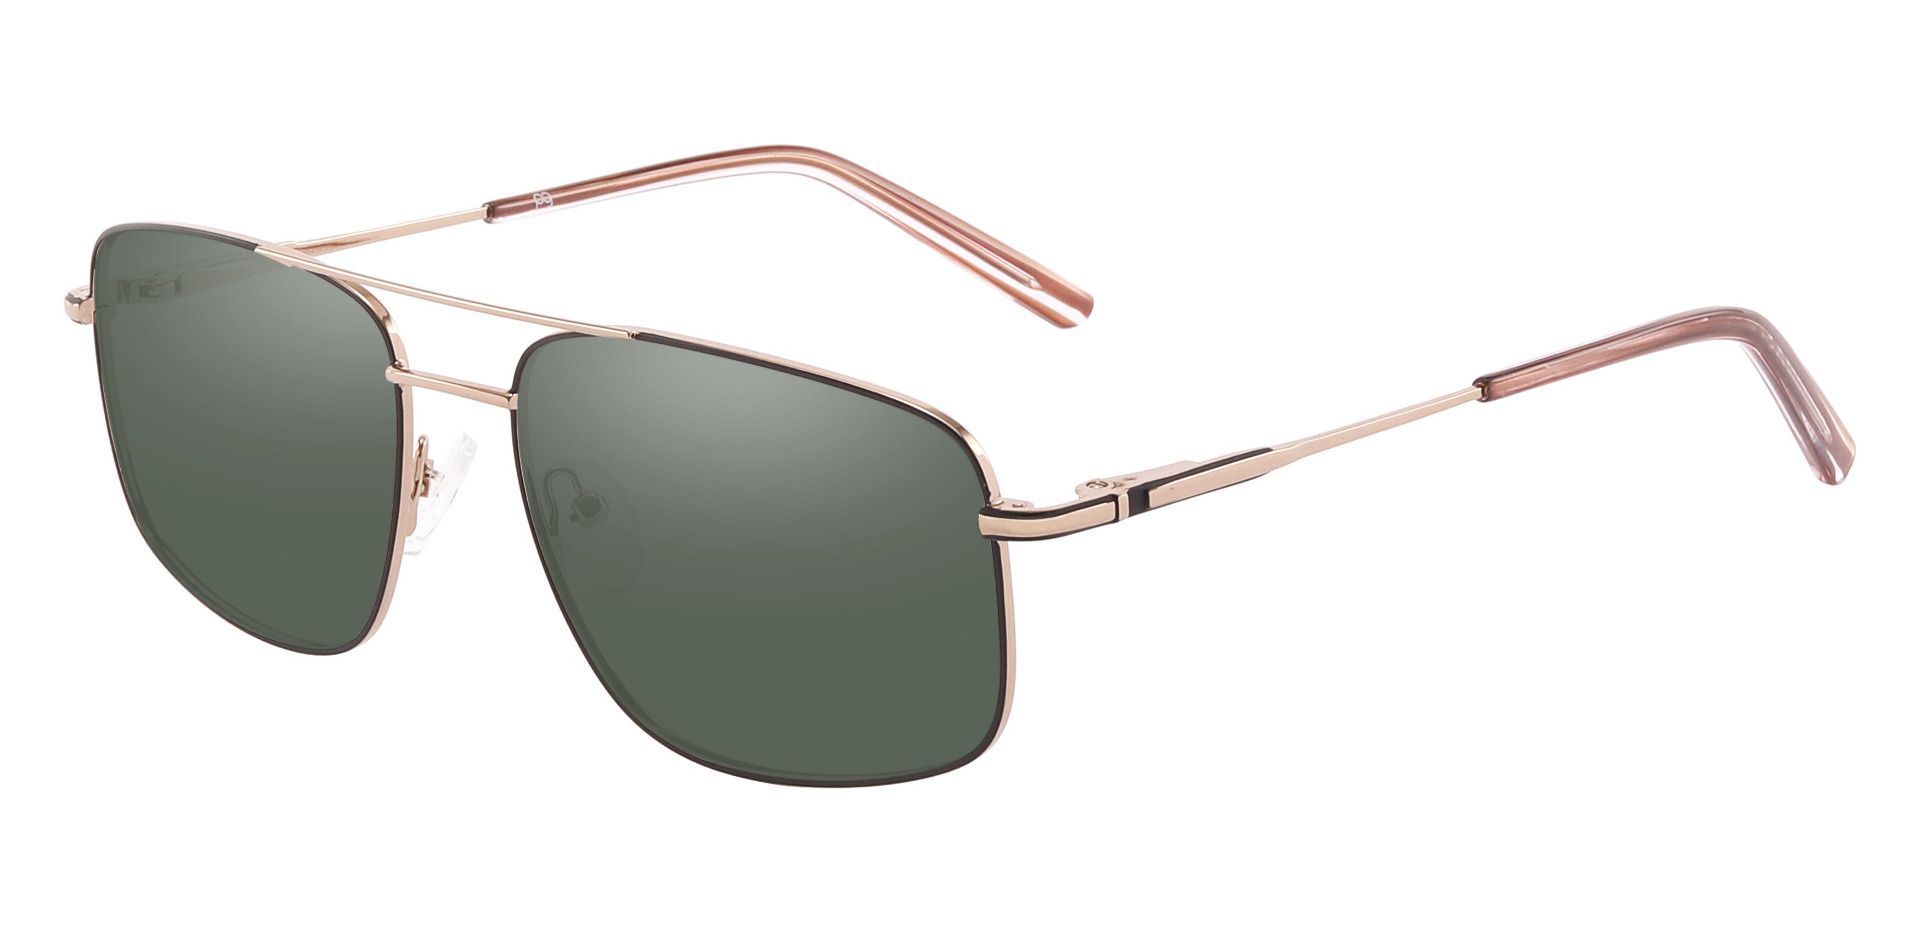 Turner Aviator Progressive Sunglasses - Gold Frame With Green Lenses